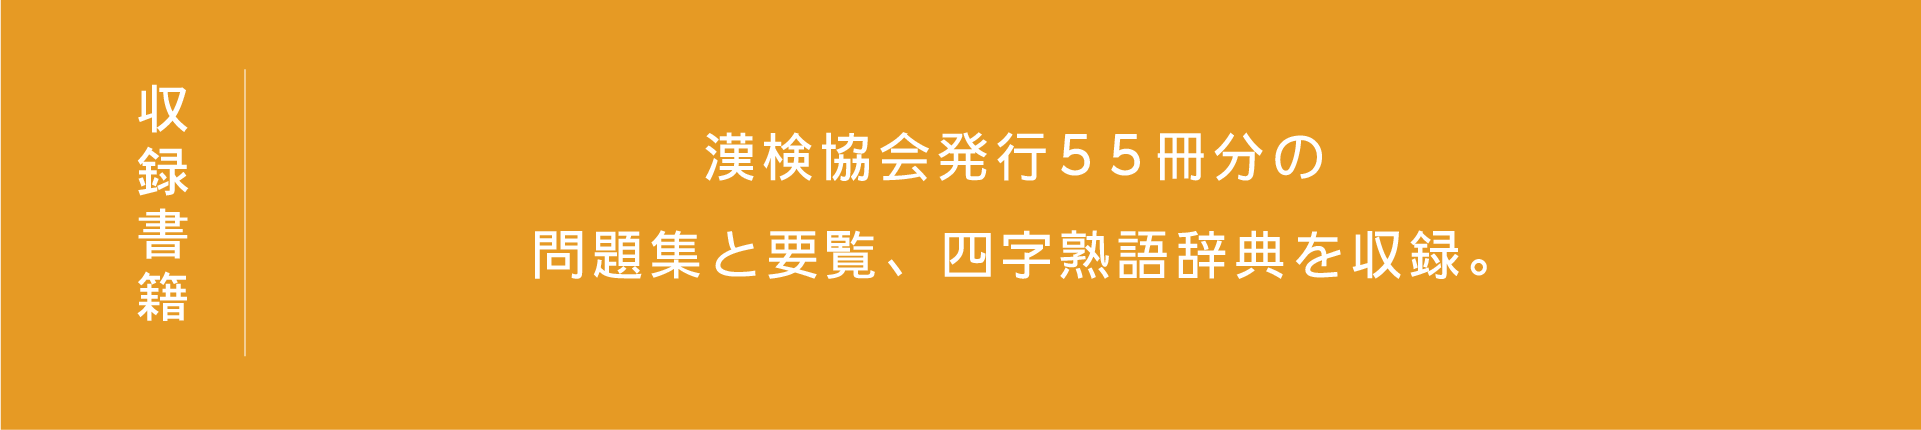 漢検協会発行55冊分の問題集と要覧、四字熟語辞典を収録